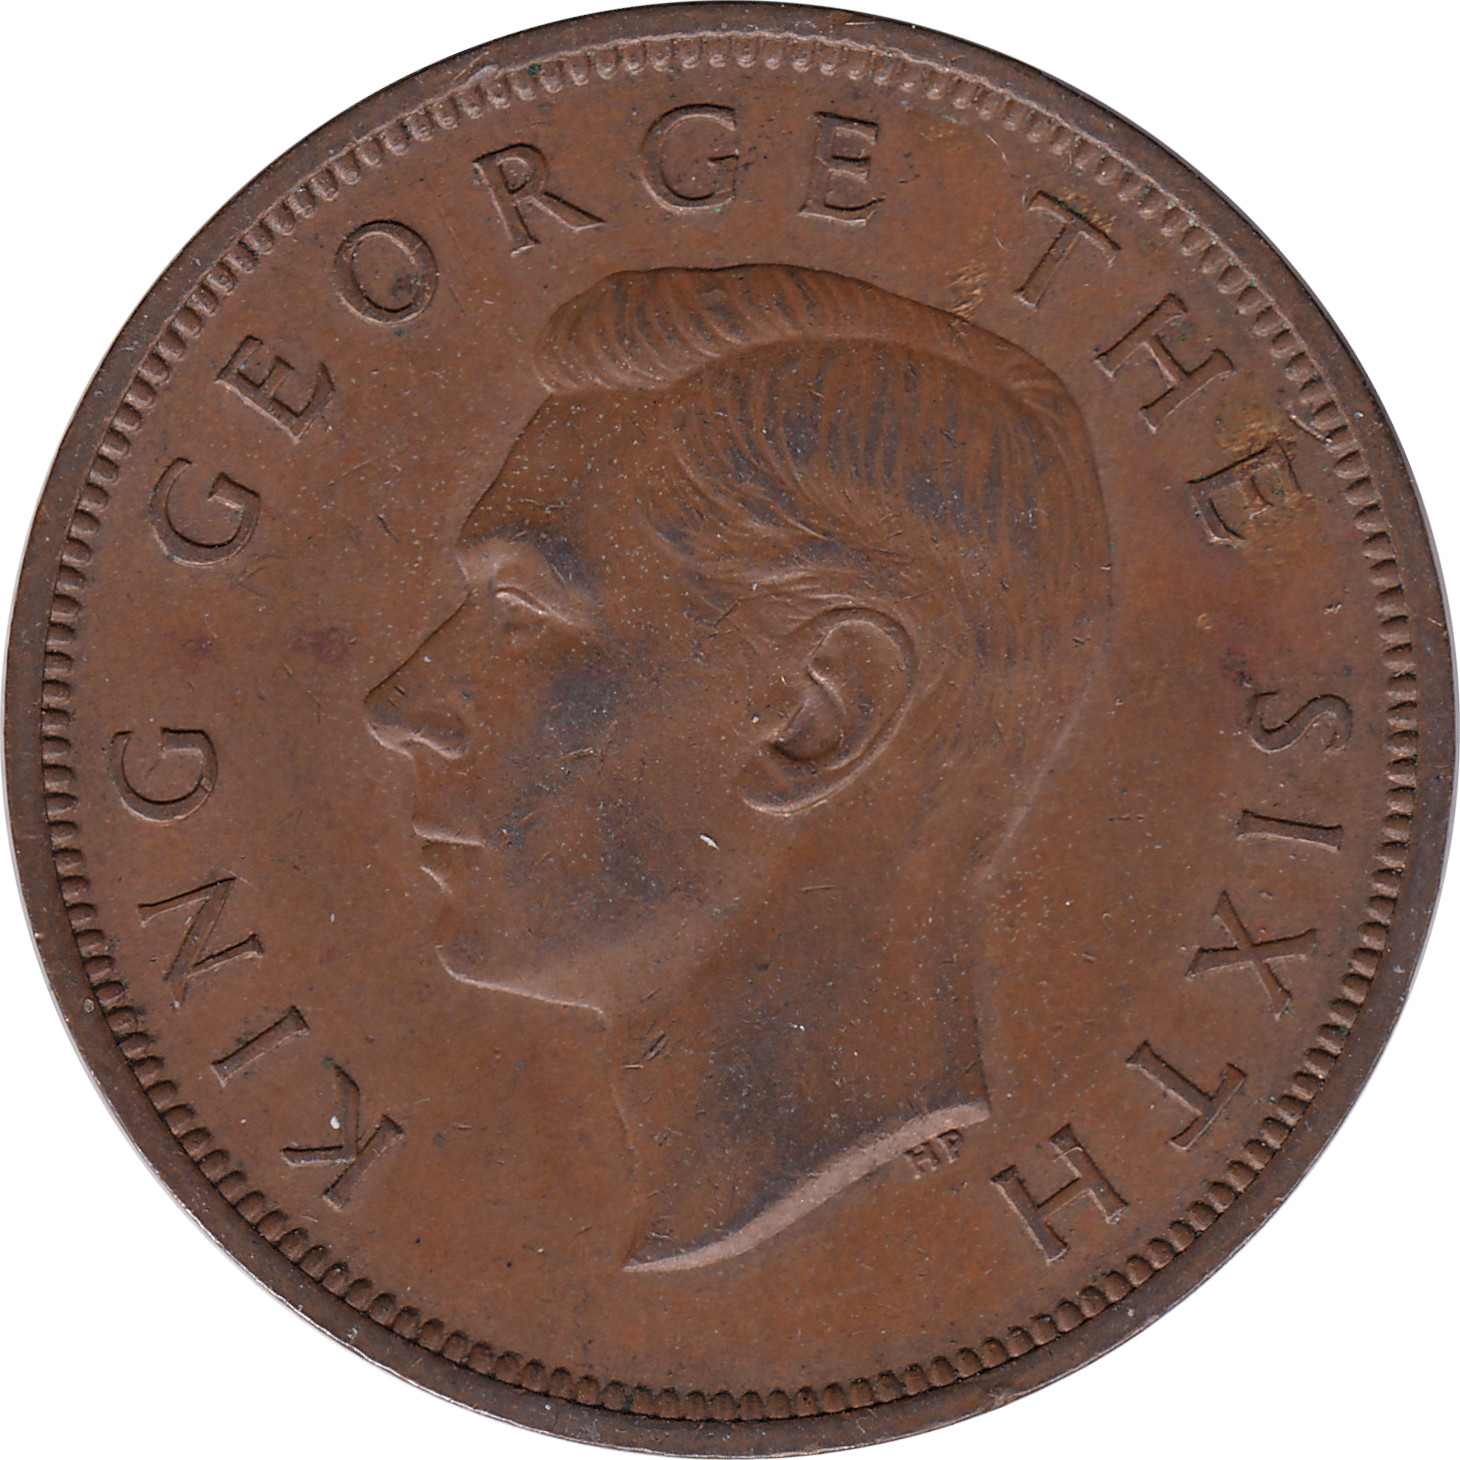 1 penny - George VI